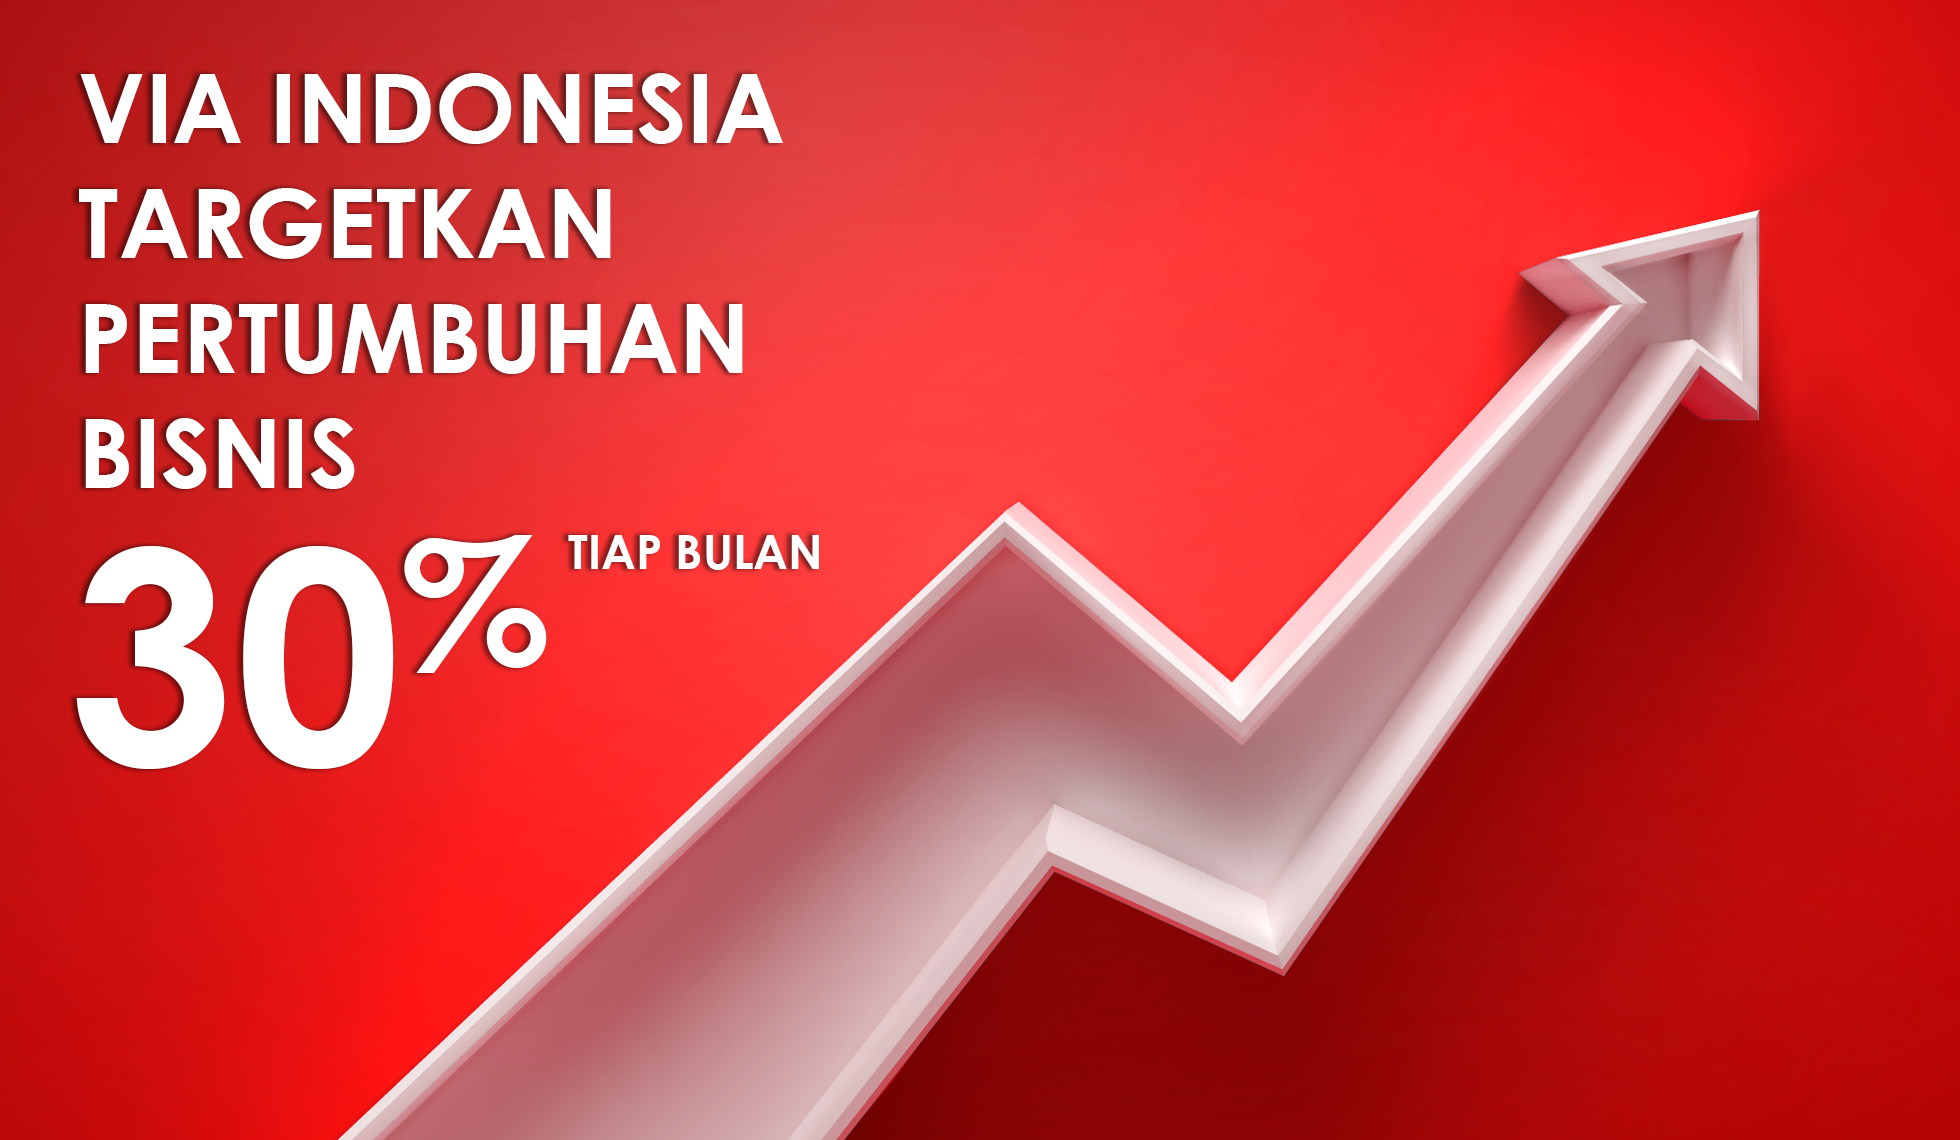 Via Indonesia Targetkan Pertumbuhan Bisnis 30% Tiap Bulan